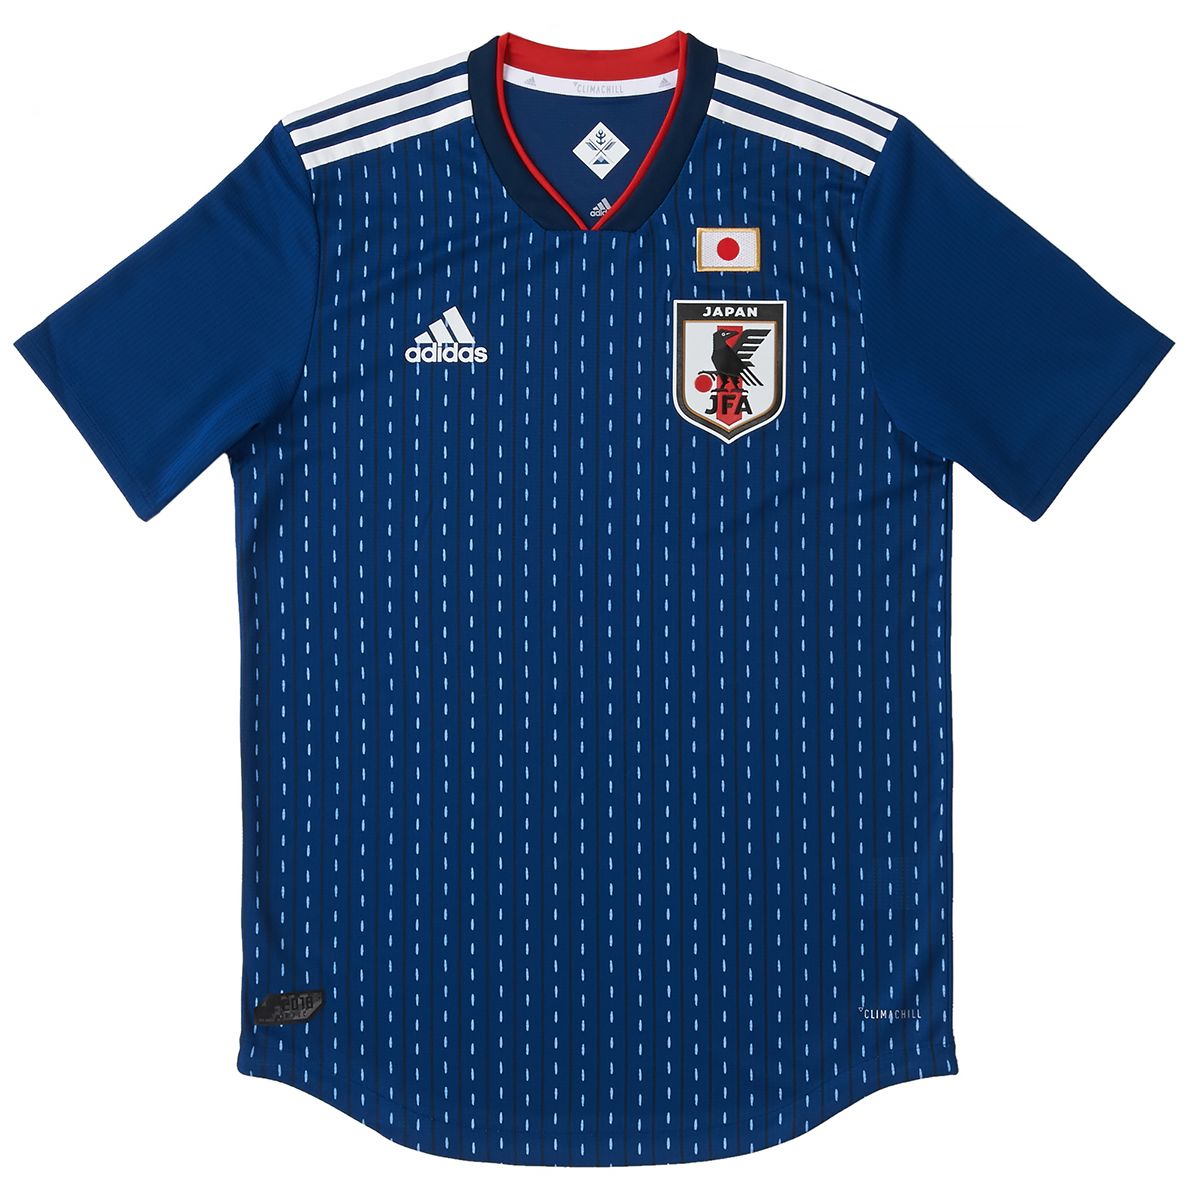 Locura Ciudad Jajaja ORIGAMI, el concepto del nuevo uniforme de la selección japonesa de fútbol  para el mundial de Catar | Nippon.com